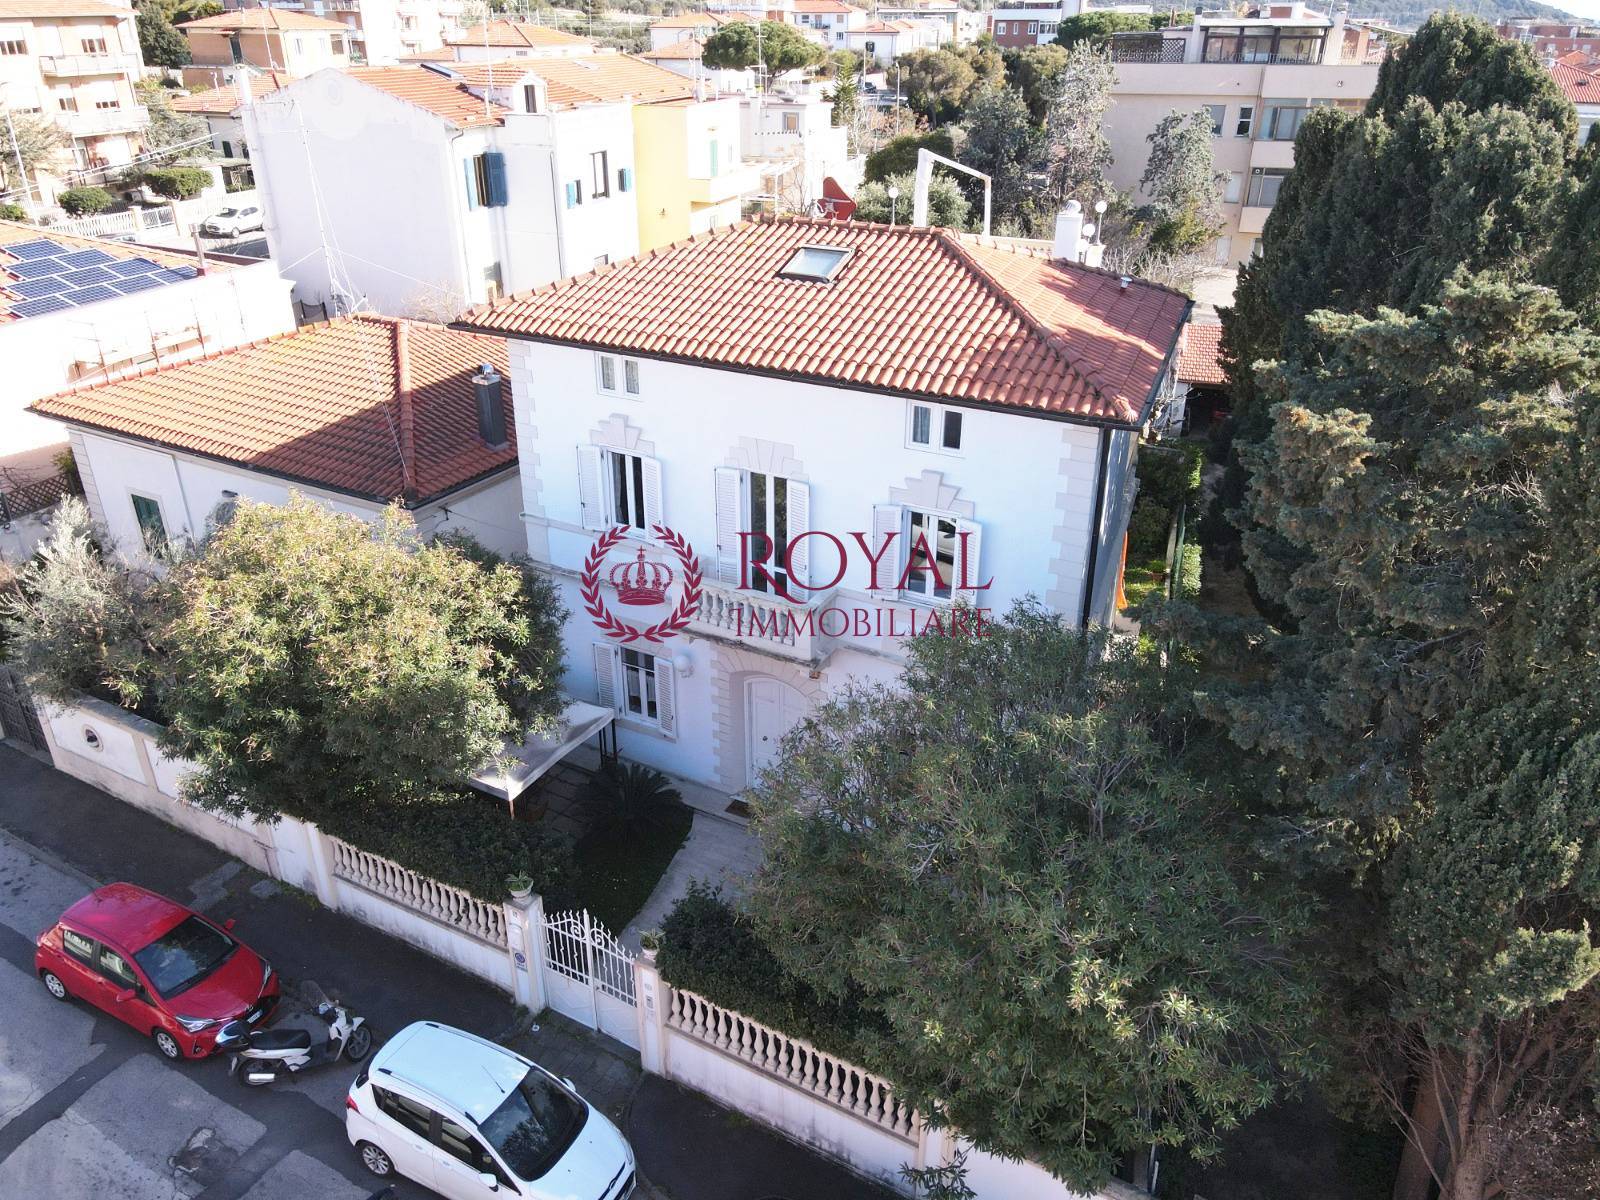 Villa in vendita a Livorno, 11 locali, zona gnano, prezzo € 960.000 | PortaleAgenzieImmobiliari.it